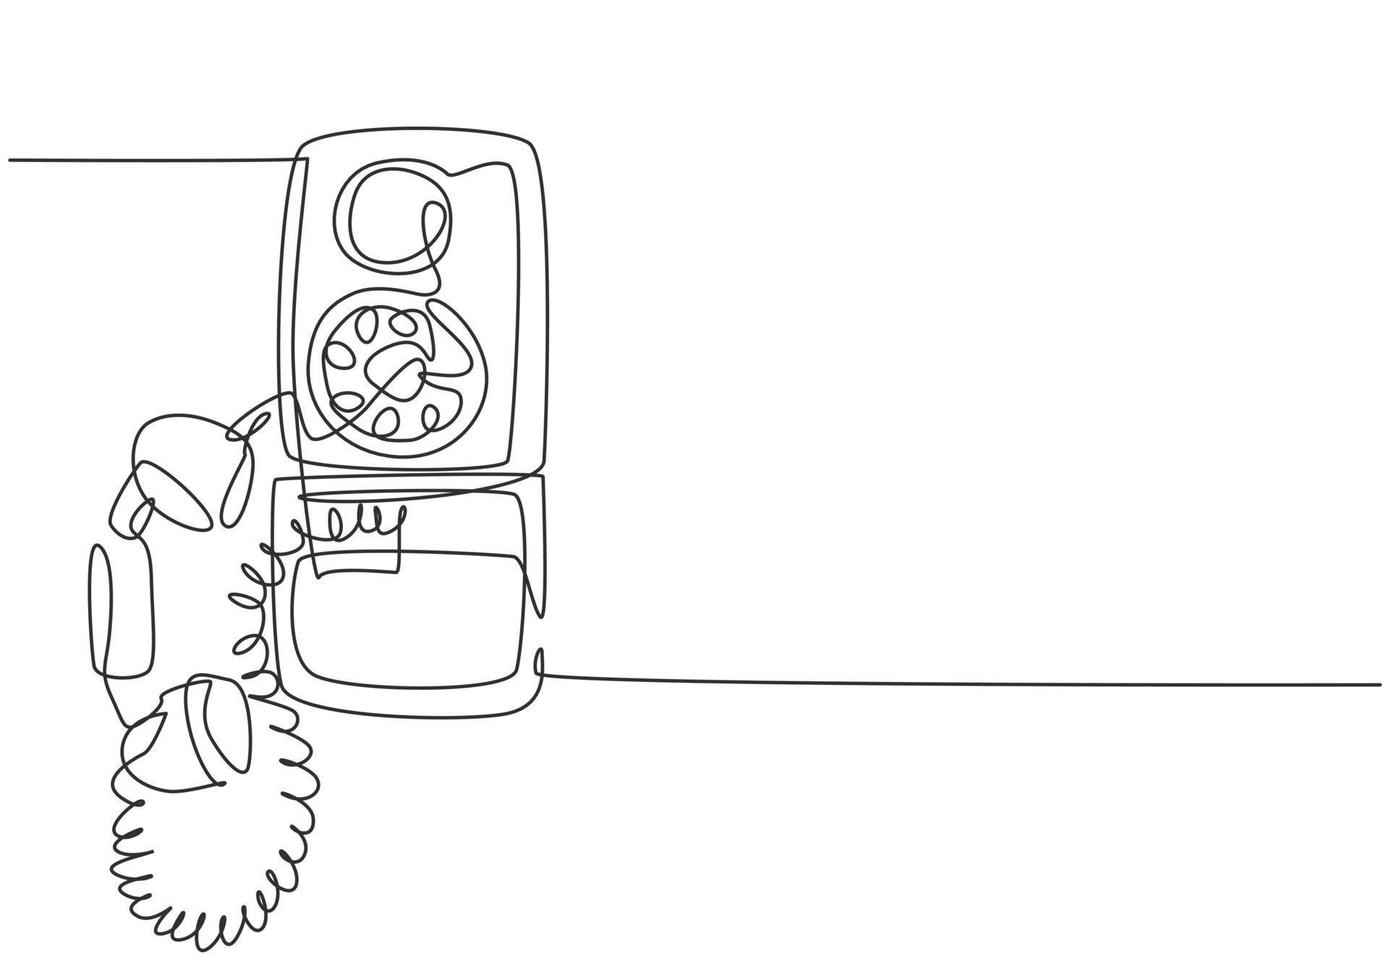 un dessin au trait continu d'un ancien téléphone mural analogique vintage pour communiquer. Appareil de télécommunication classique rétro concept dessin graphique à ligne unique illustration vectorielle vecteur